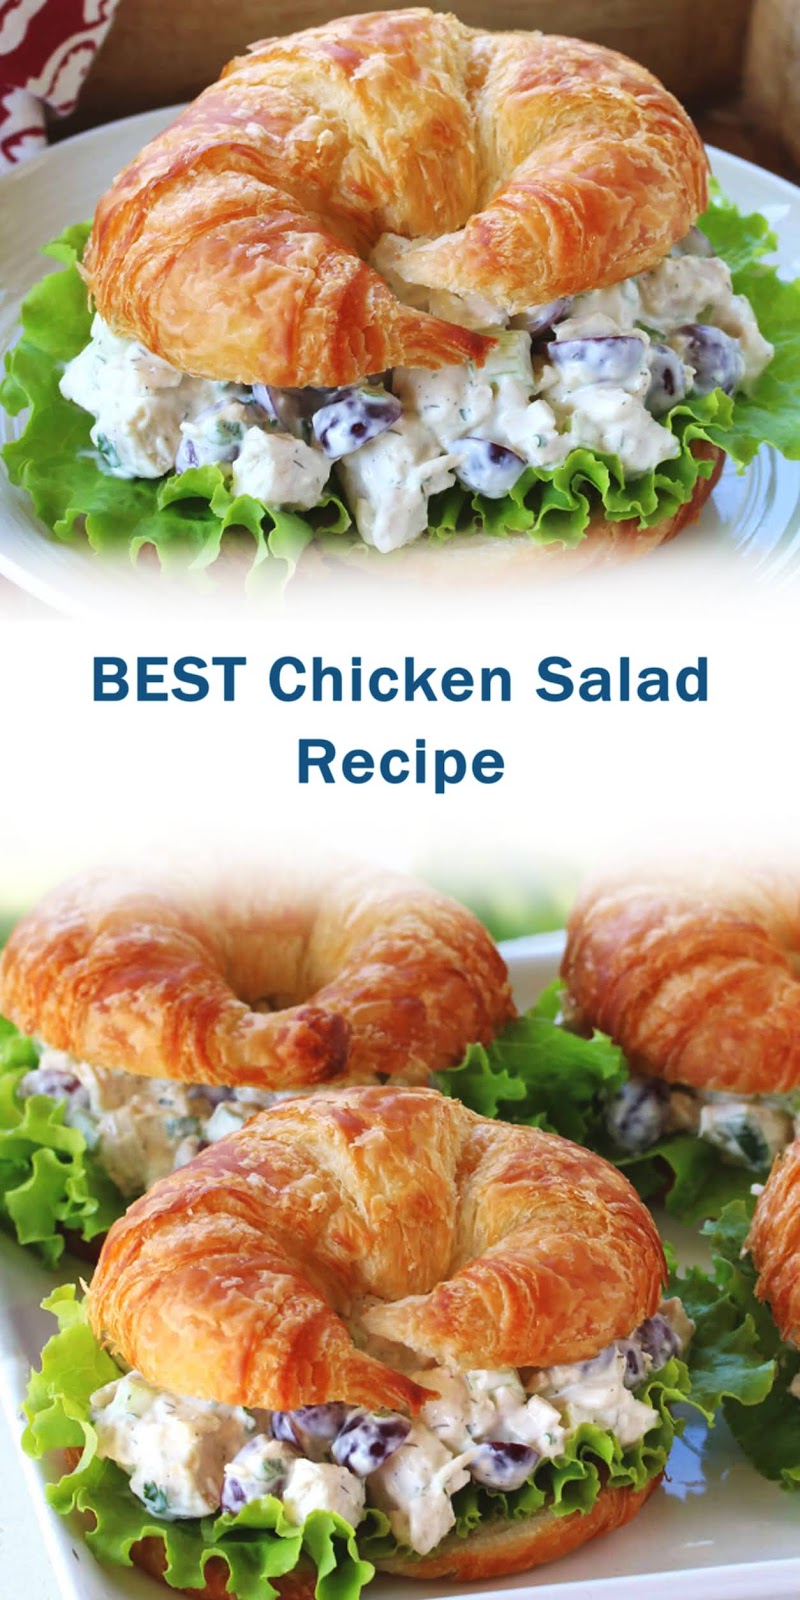 BEST Chicken Salad Recipe - 3 SECONDS